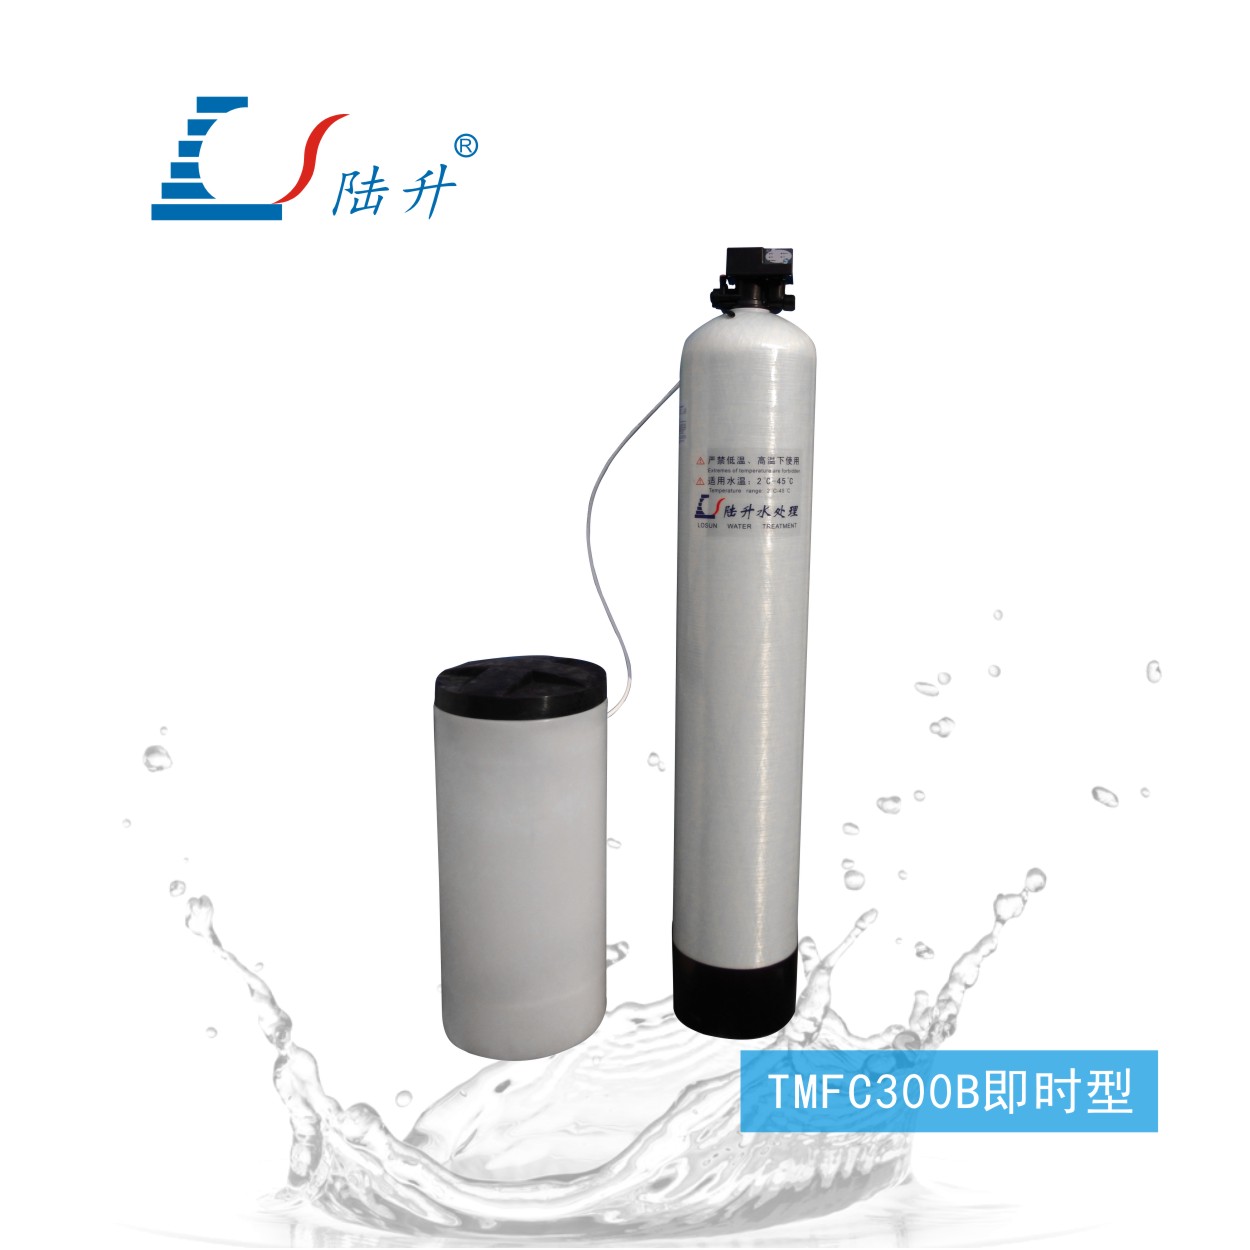 TMFC300B即时型半自动软化水